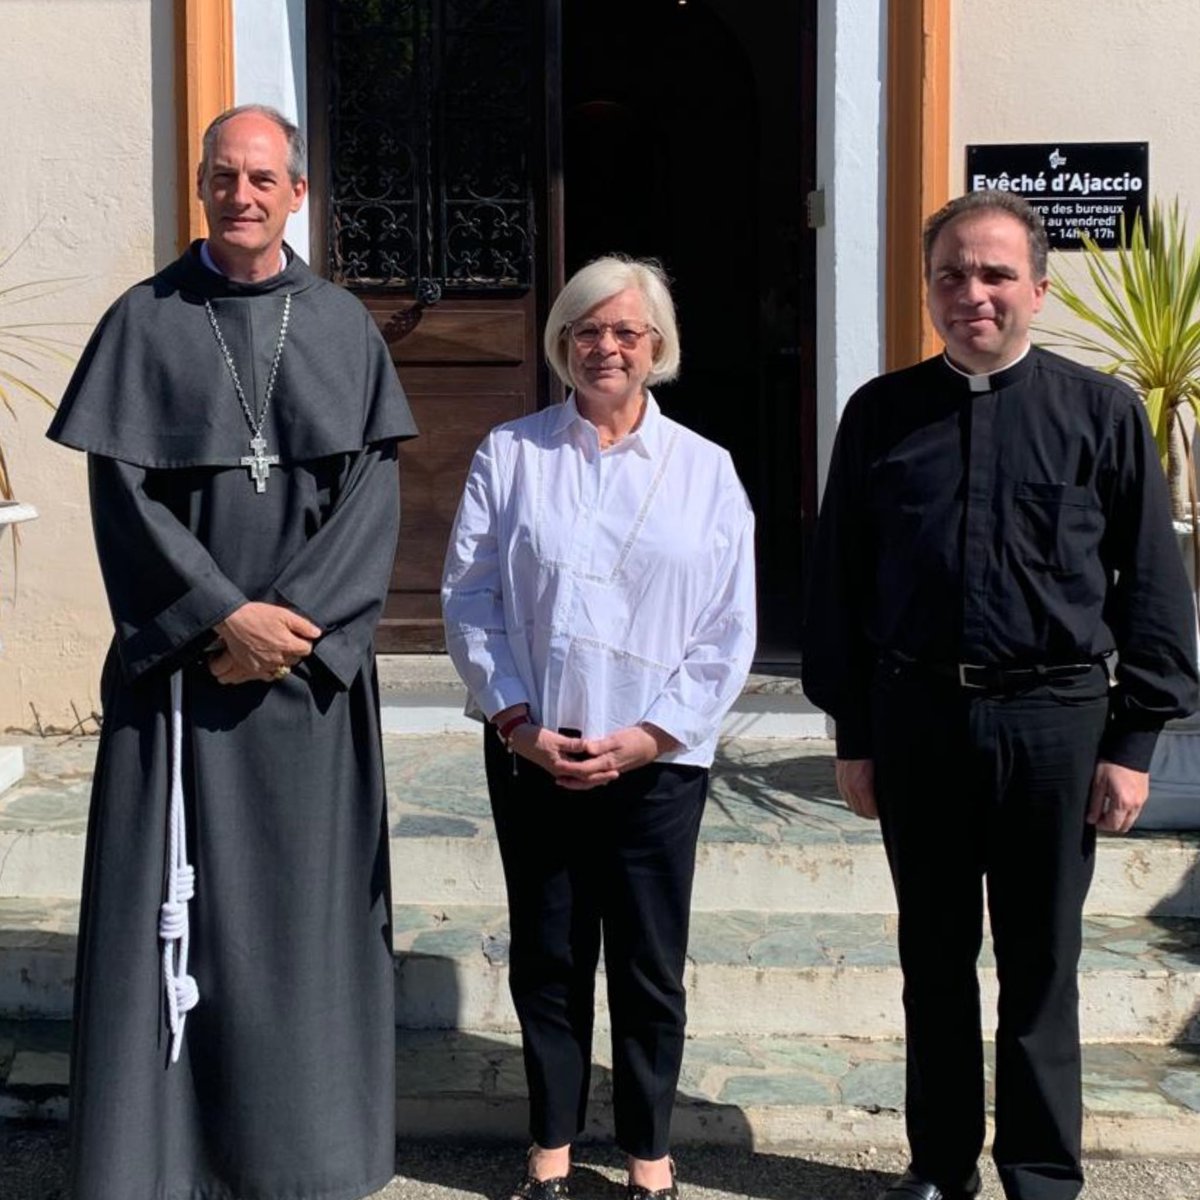 Visite de Mme Catherine Vautrin, Ministre du Travail, de la Santé et des Solidarités à l’évêché d’Ajaccio.
—
#cardinalbustillo #dioceseajaccio #eglisecatholiquedecorse #visite #ministre #corsica